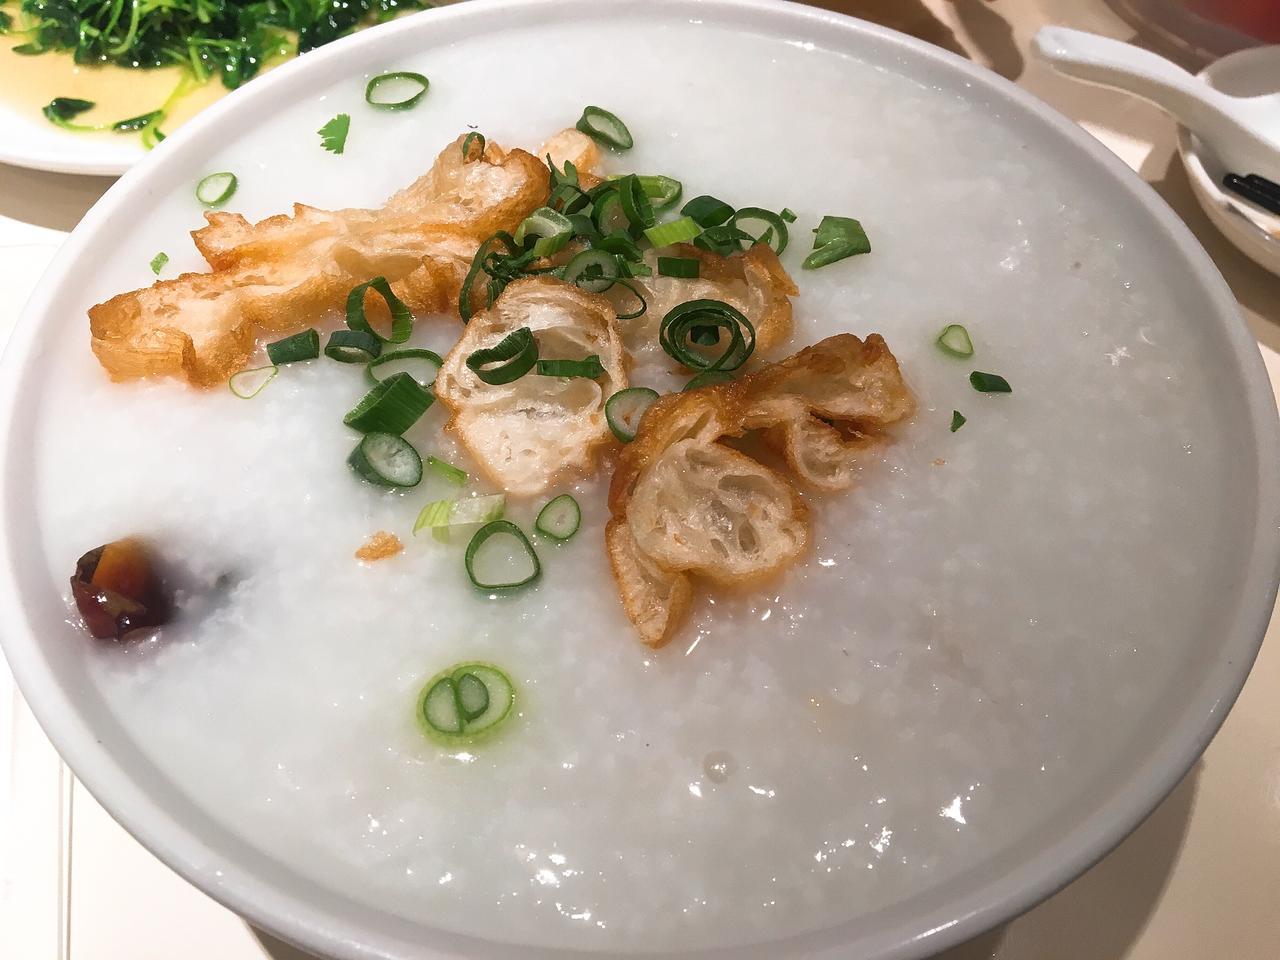 横浜中華街 謝甜記 の絶品中華粥を一度は食してみるべし 横浜フィッシングショーのシメにどうぞ ルアマガ